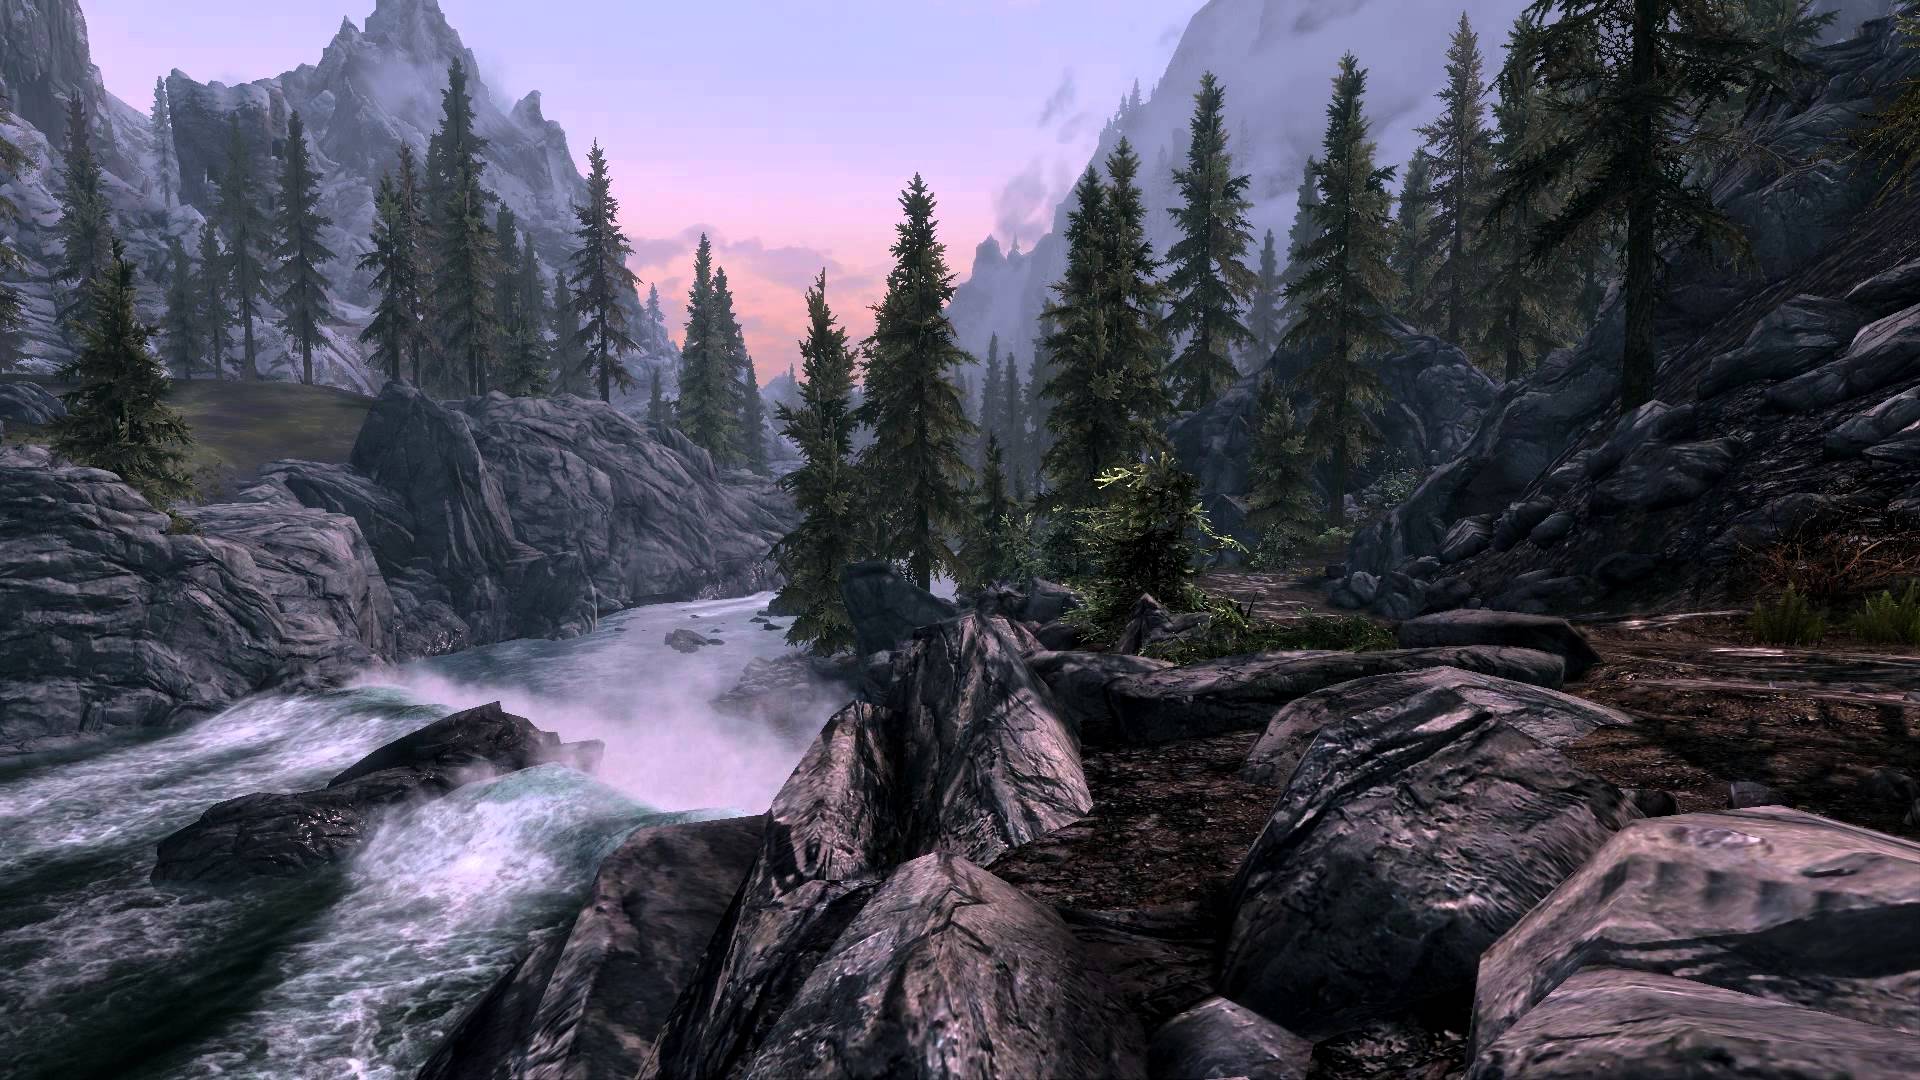 Skyrim - DreamScene [Live Wallpaper] - River Scene 2 (1080p) - YouTube